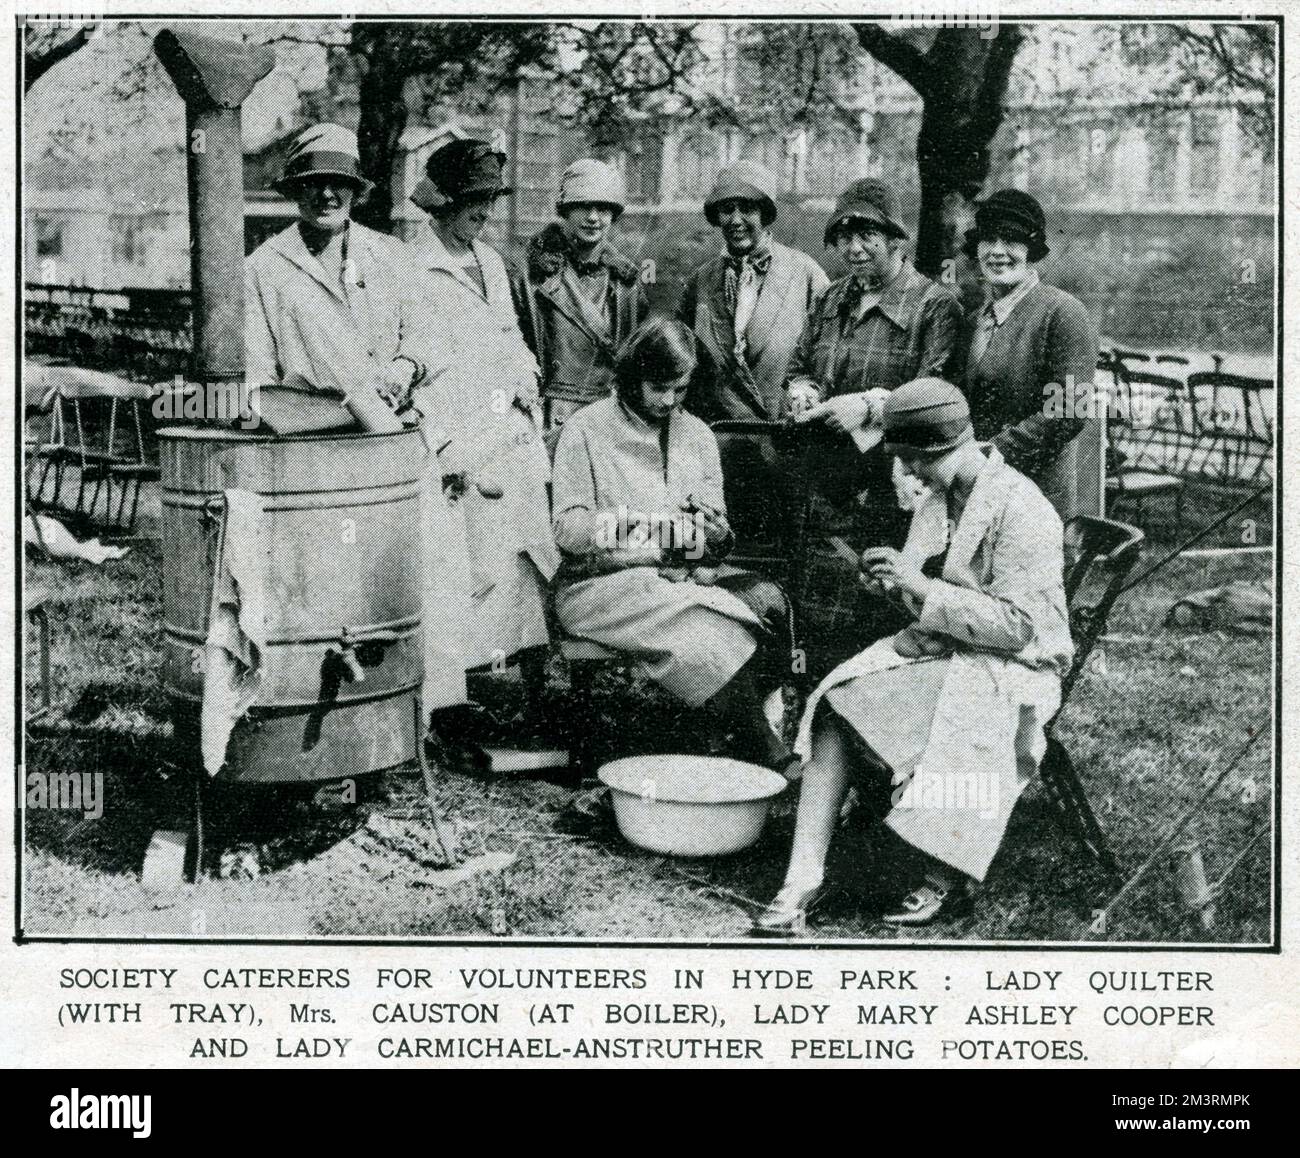 A sostegno dello sciopero generale, le Signore della società hanno aiutato, fotografando i volontari che lavorano a Hyde Park, Londra, all'aria aperta che pelano le patate, Lady Quilter (con vassoio), la signora Causton (in caldaia), la signora Mary Ashley Cooper e la signora Carmichael-Anstruther. Maggio 1926 Foto Stock